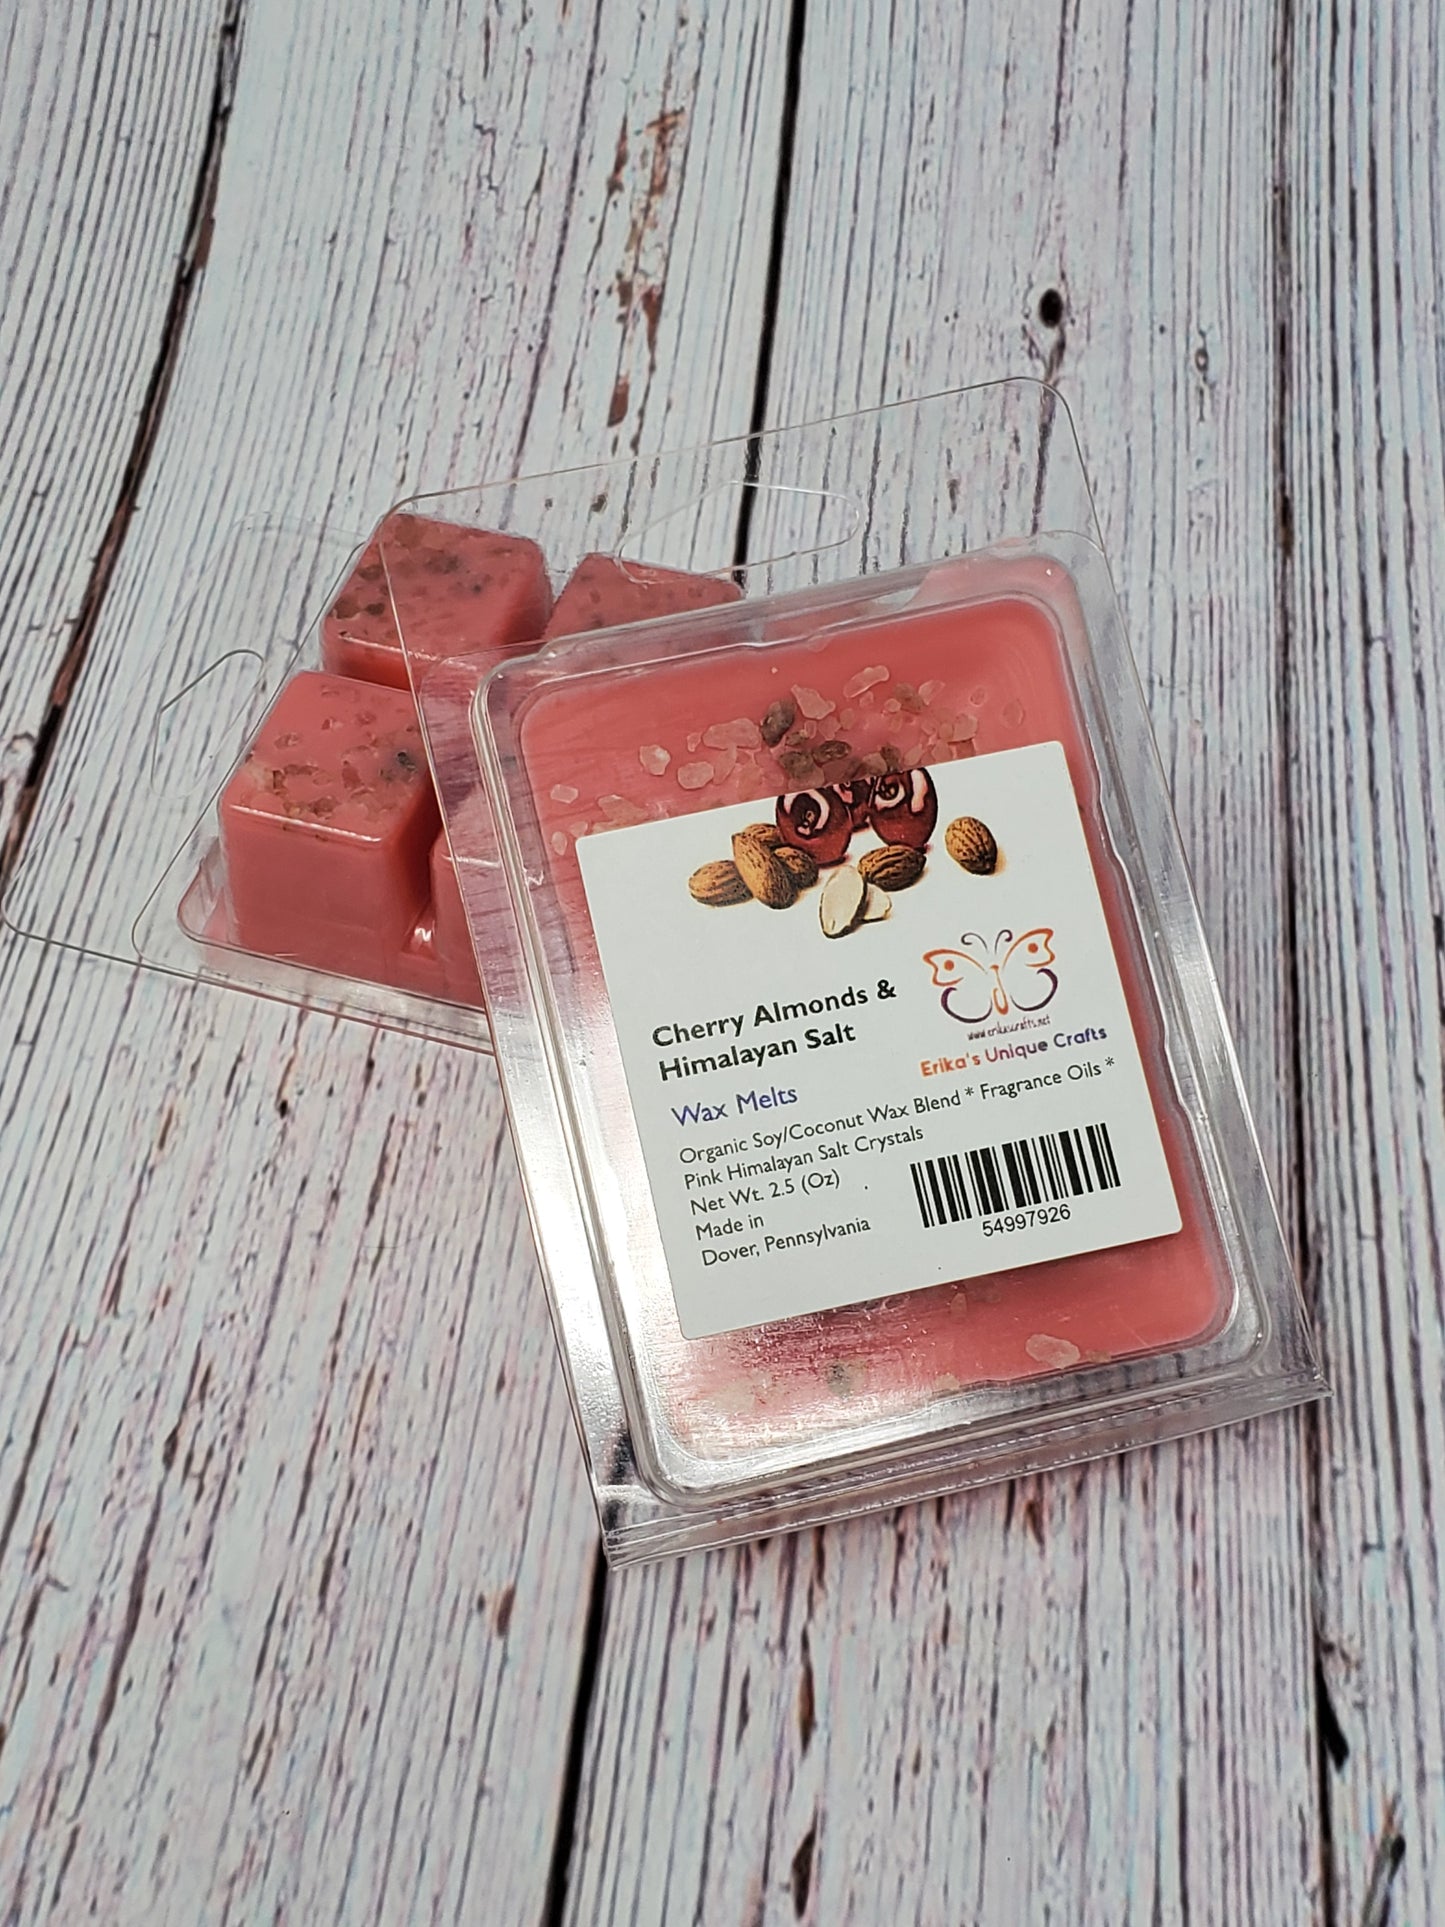 Cherry Almond with Himalayan Salt Crystals Wax Melts - Erikas Crafts